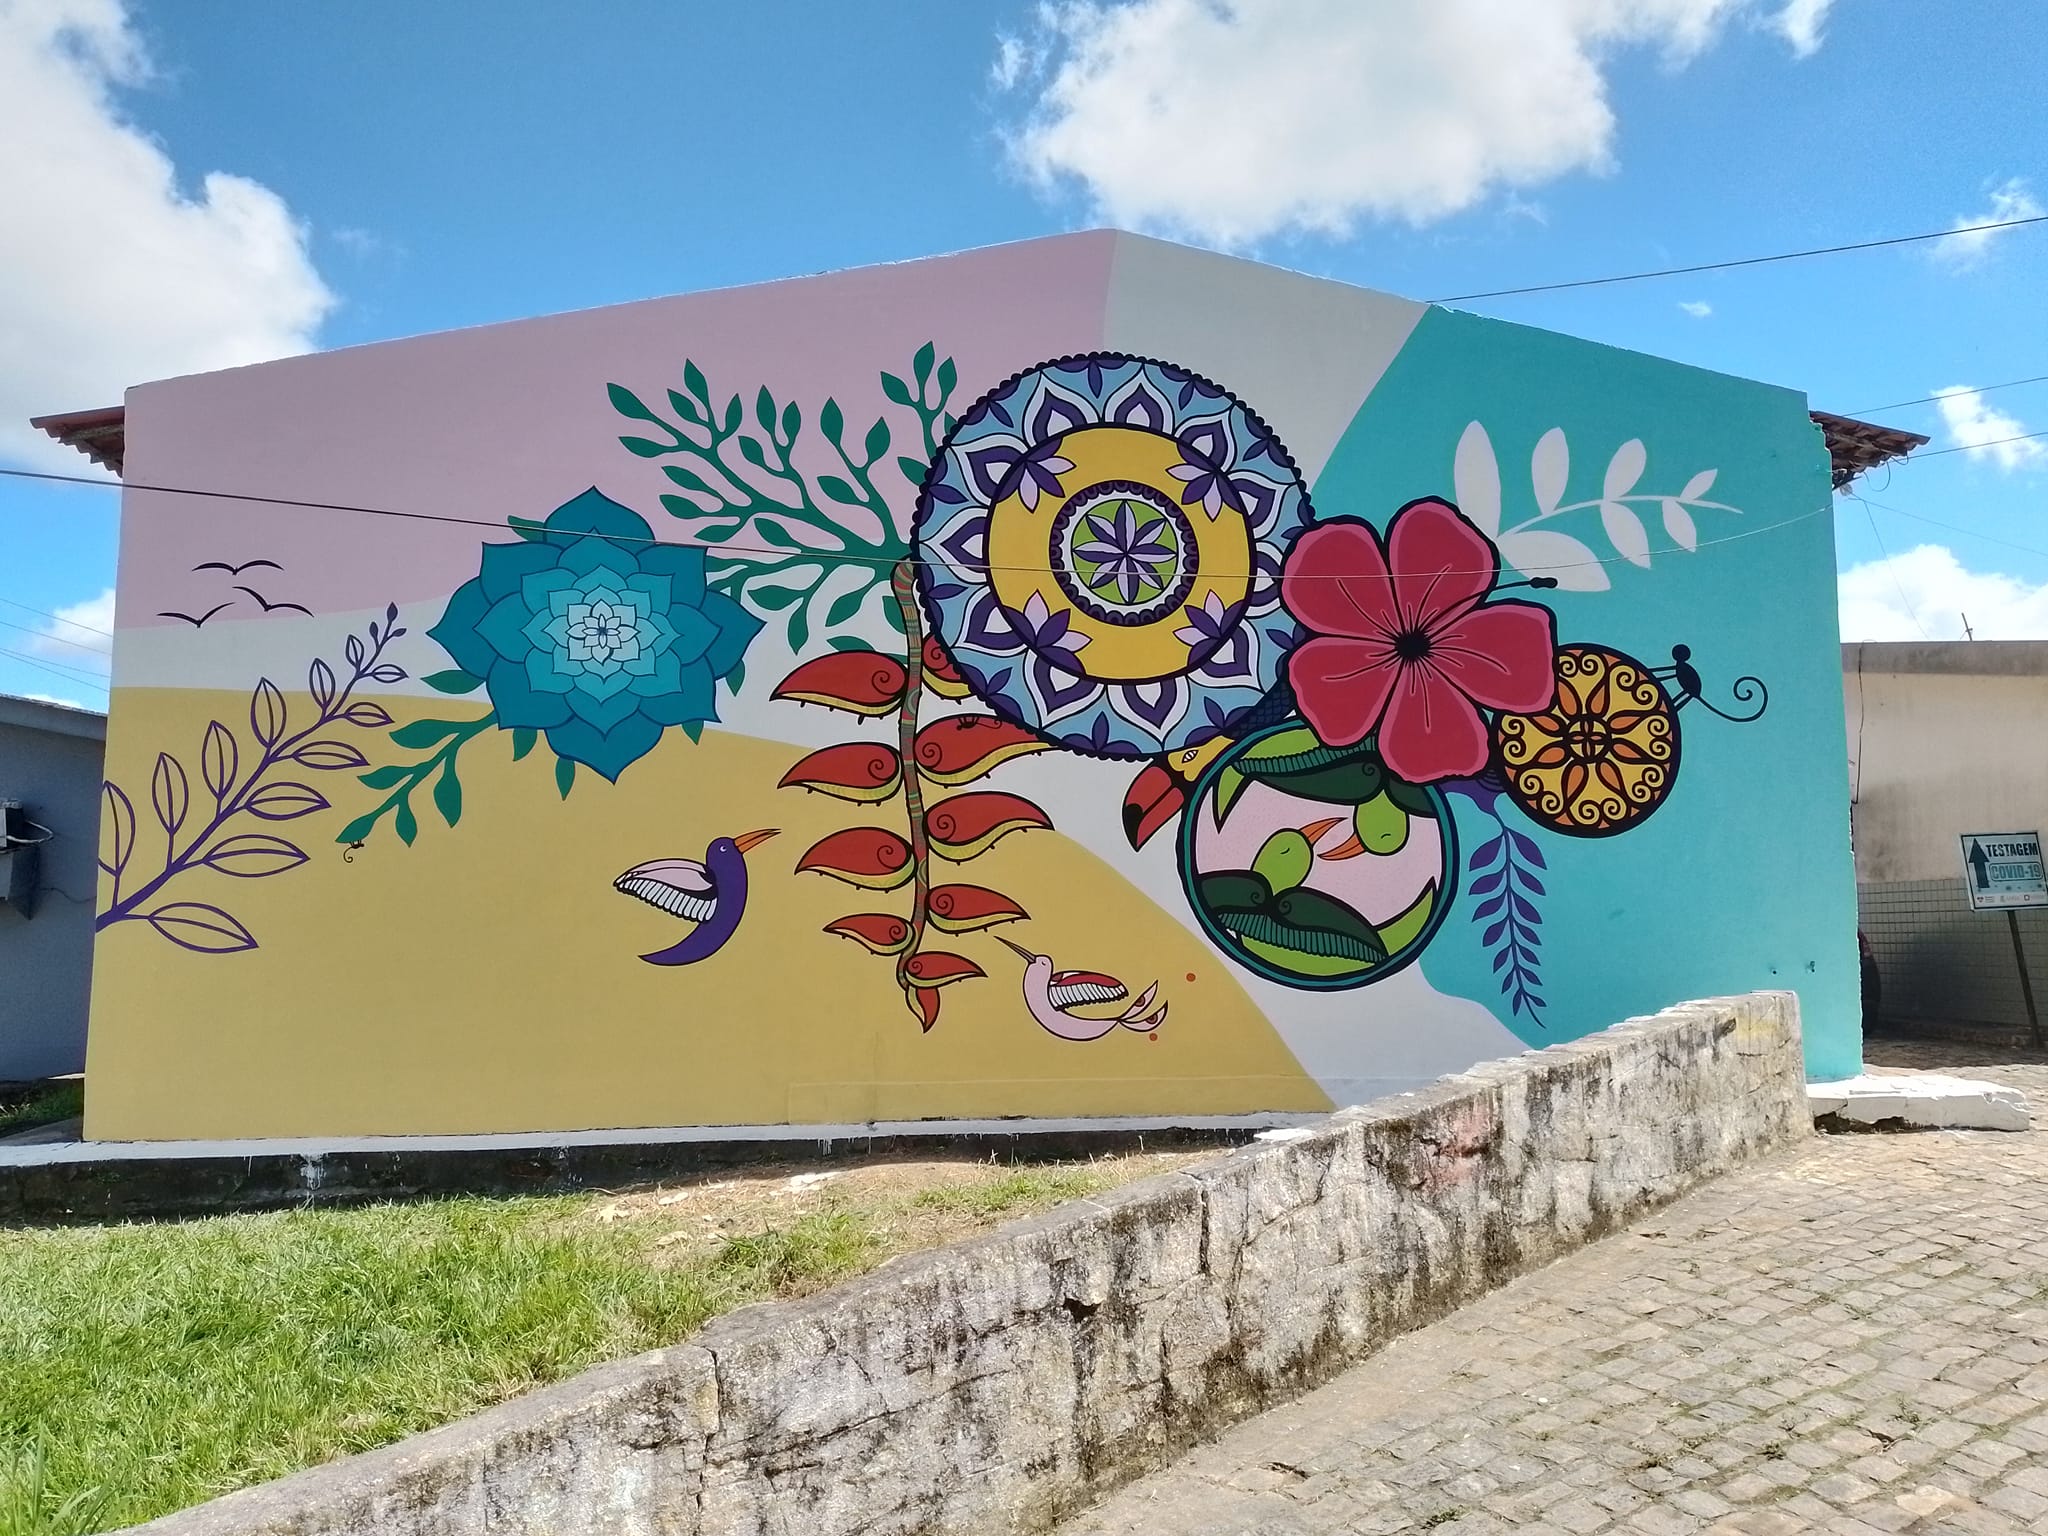 SECULT Areia desenvolve o projeto Viva Areia-Arte na comunidade, através do artista plastico Guataçara Monteiro